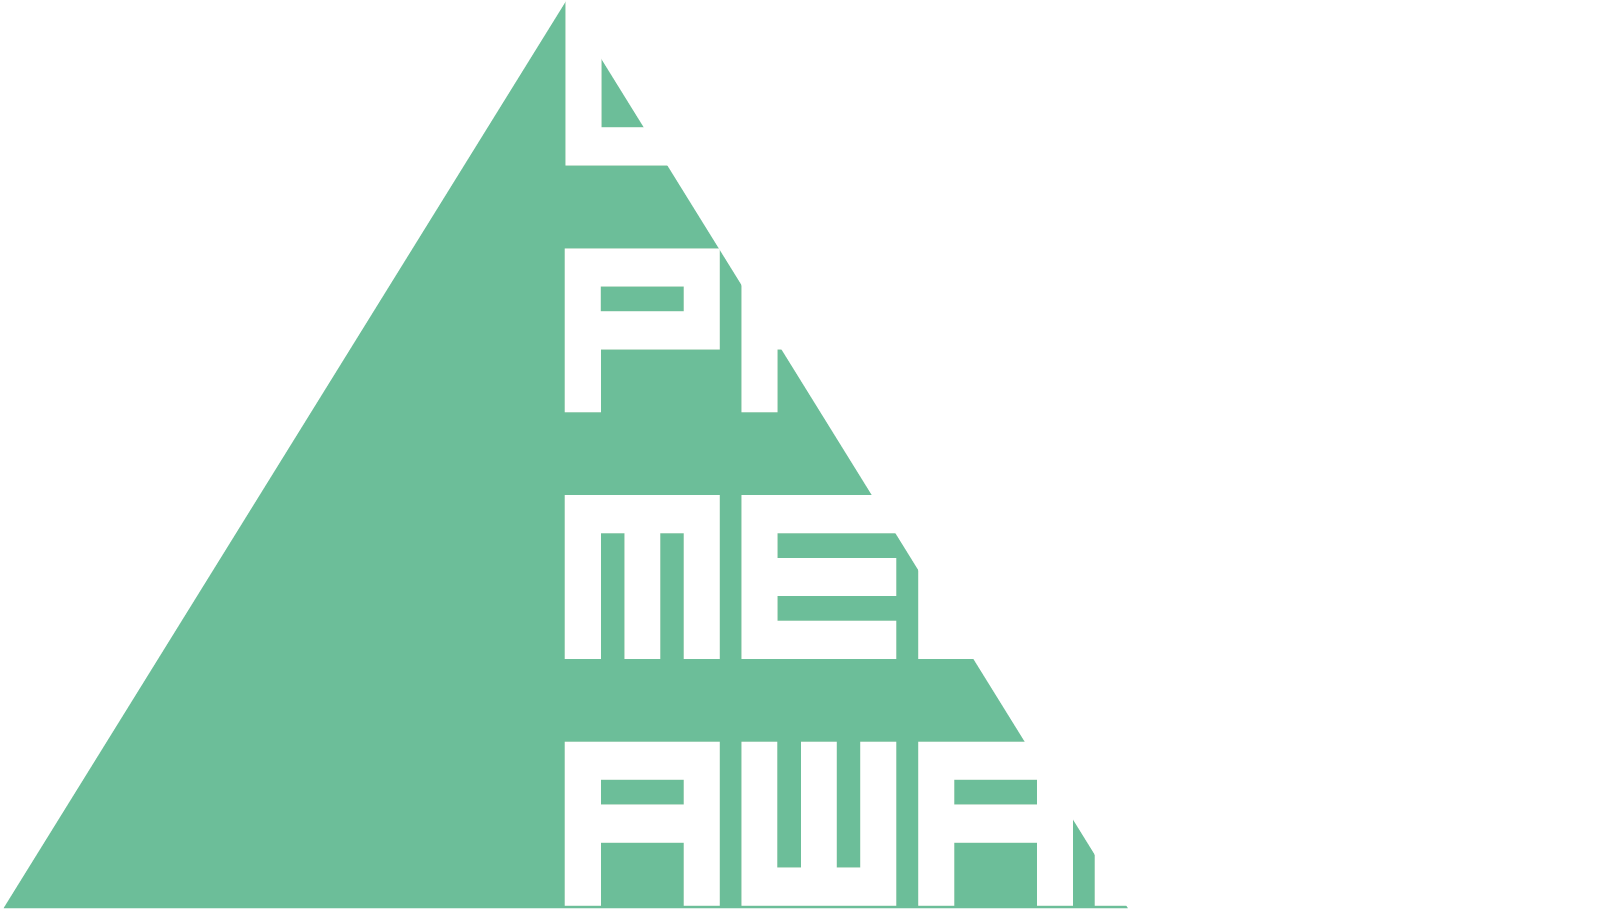 UK Paid Media Awards logo